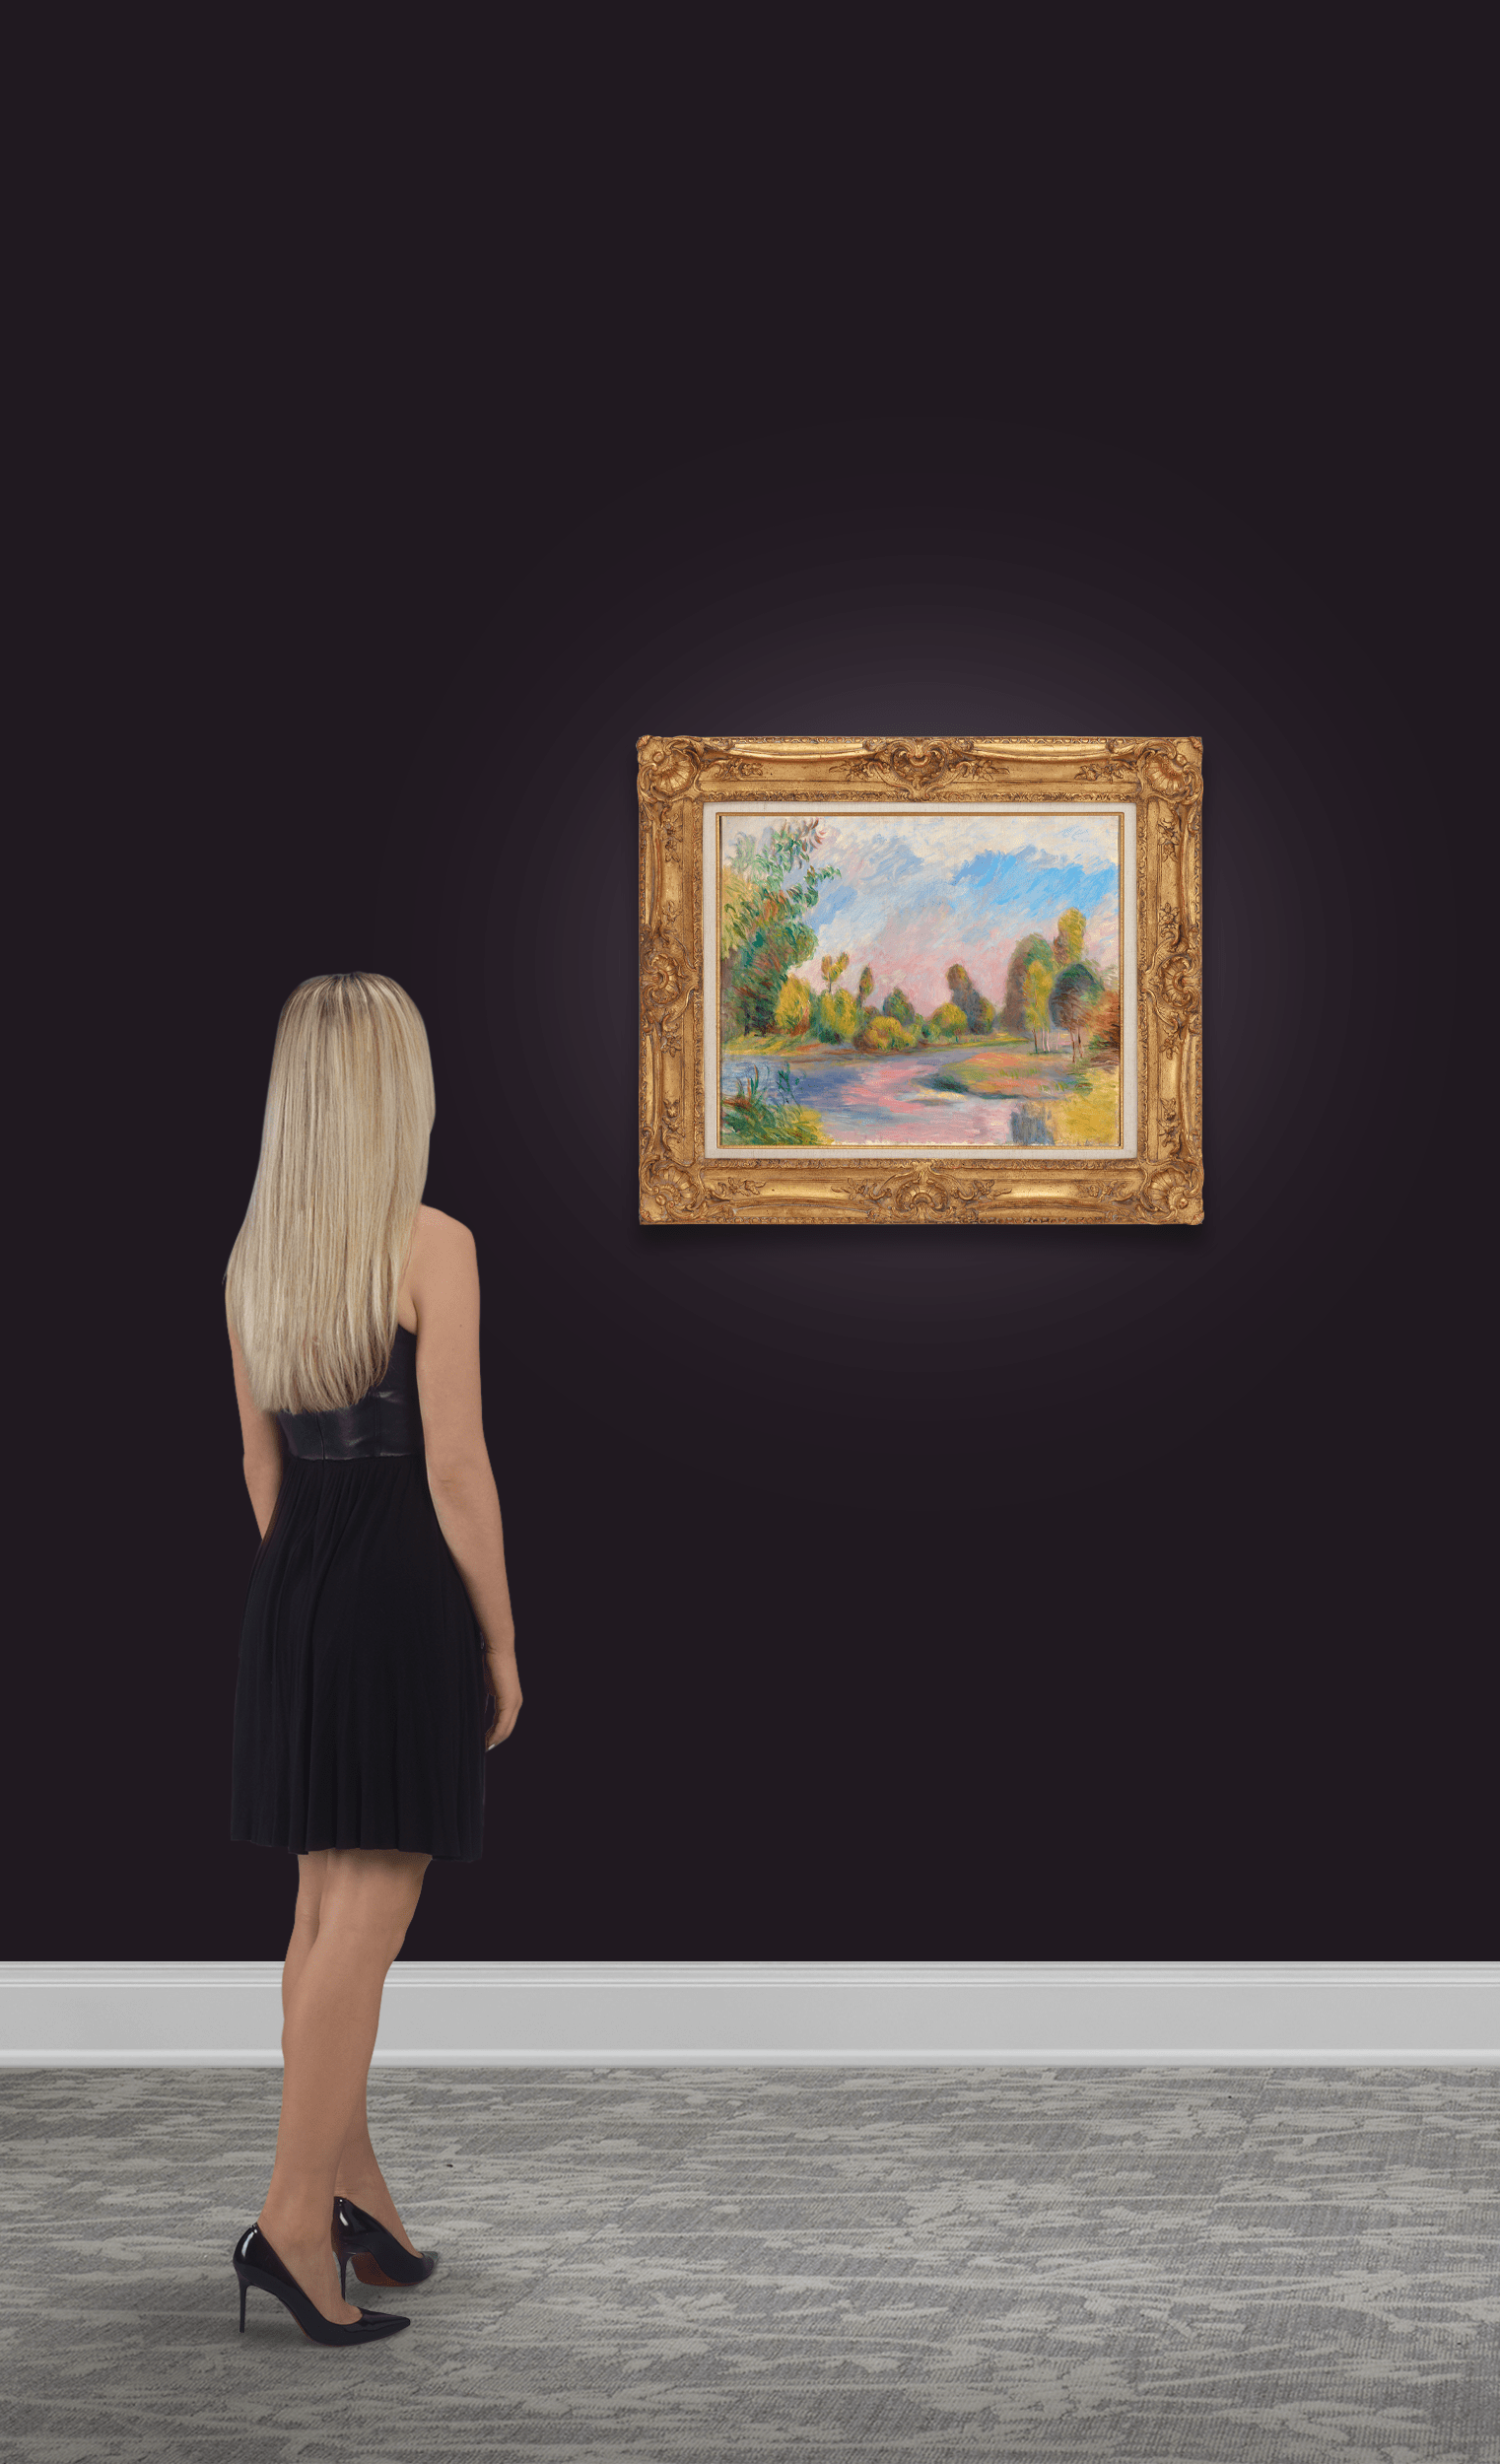 Au bord de la rivière by Pierre-Auguste Renoir